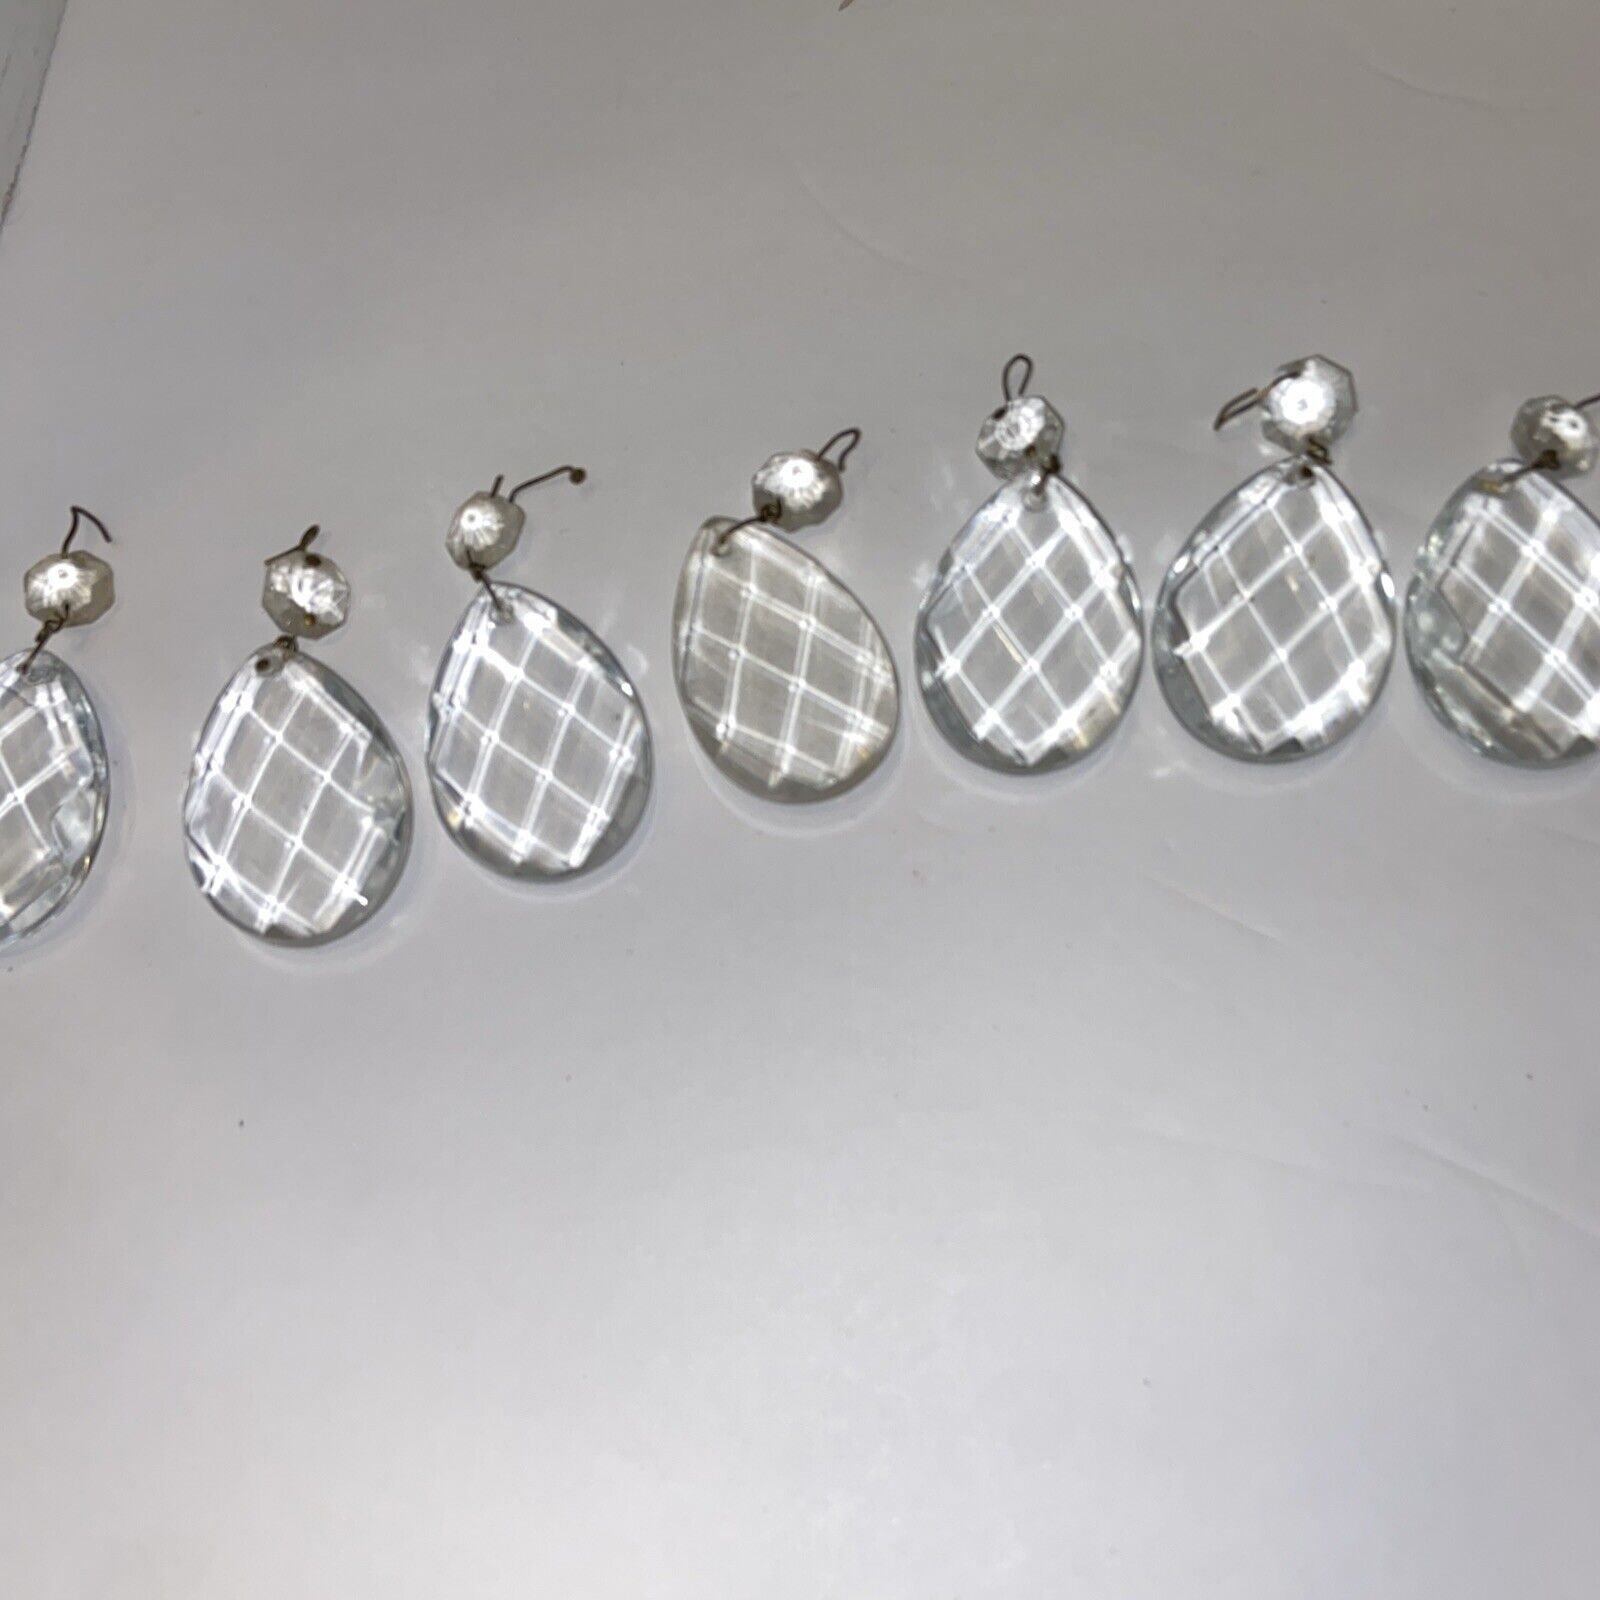 Lot of 9 Vintage Lamp Chandelier Part Tear Drop Crystal Glass Prisms